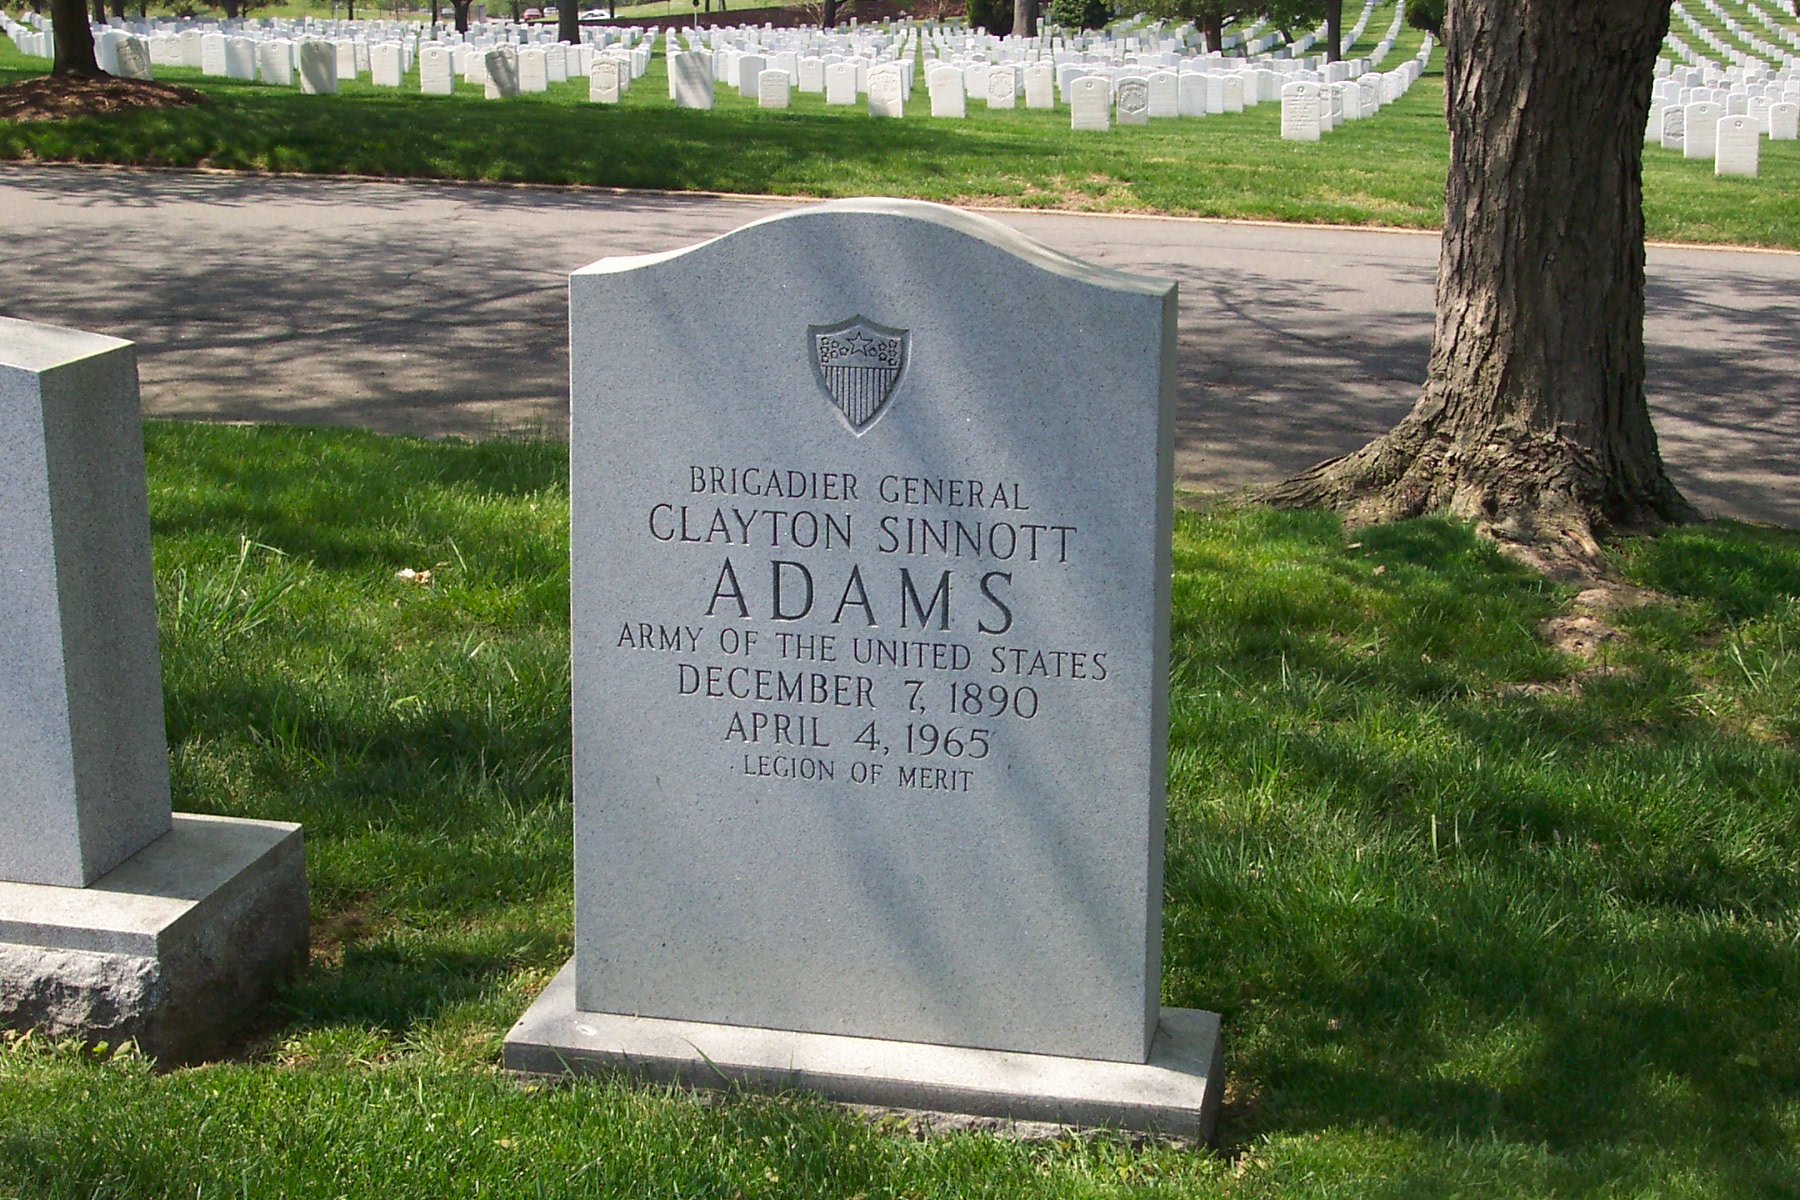 csadams-gravesite-photo-april-2004-001.jpg